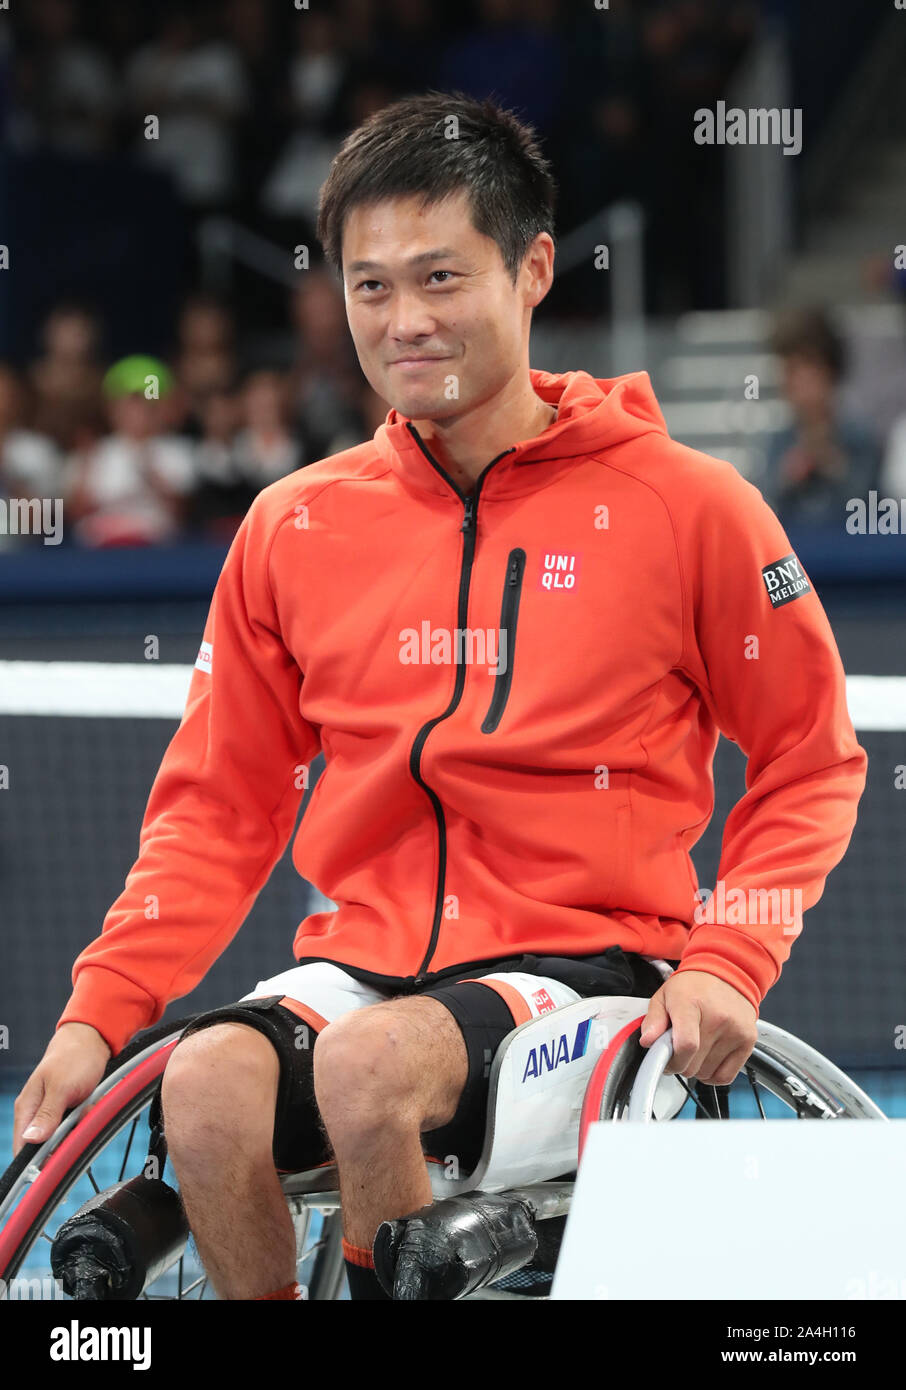 Tokio, Japón. 14 Oct, 2019. Japón gigante de ropa Uniqlo embajador japonés Shingo Kunieda Jugador de tenis en silla de ruedas sonríe como Uniqlo tiene una caridad el evento 'Uniqlo Lifewear